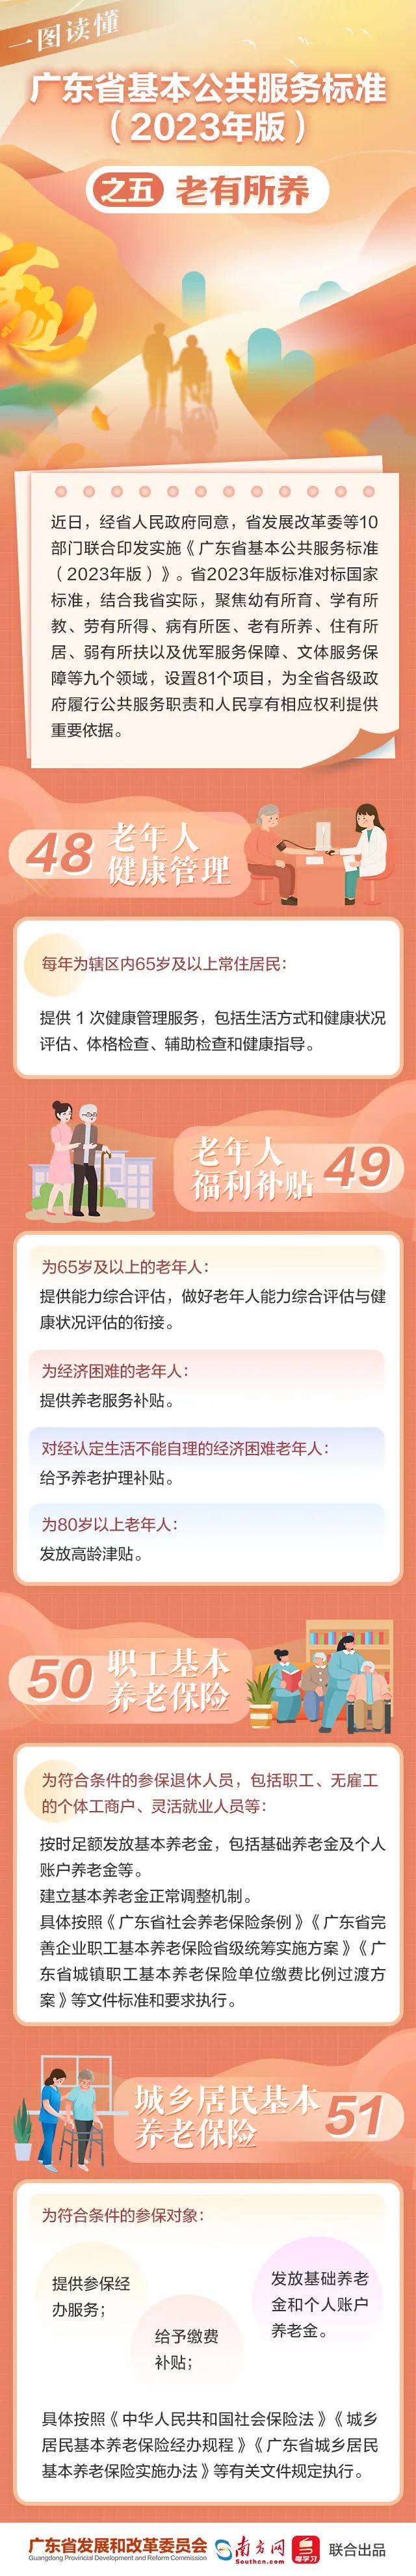 一图读懂《广东省基本公共服务标准（2023年版）》之五 老有所养.jpg